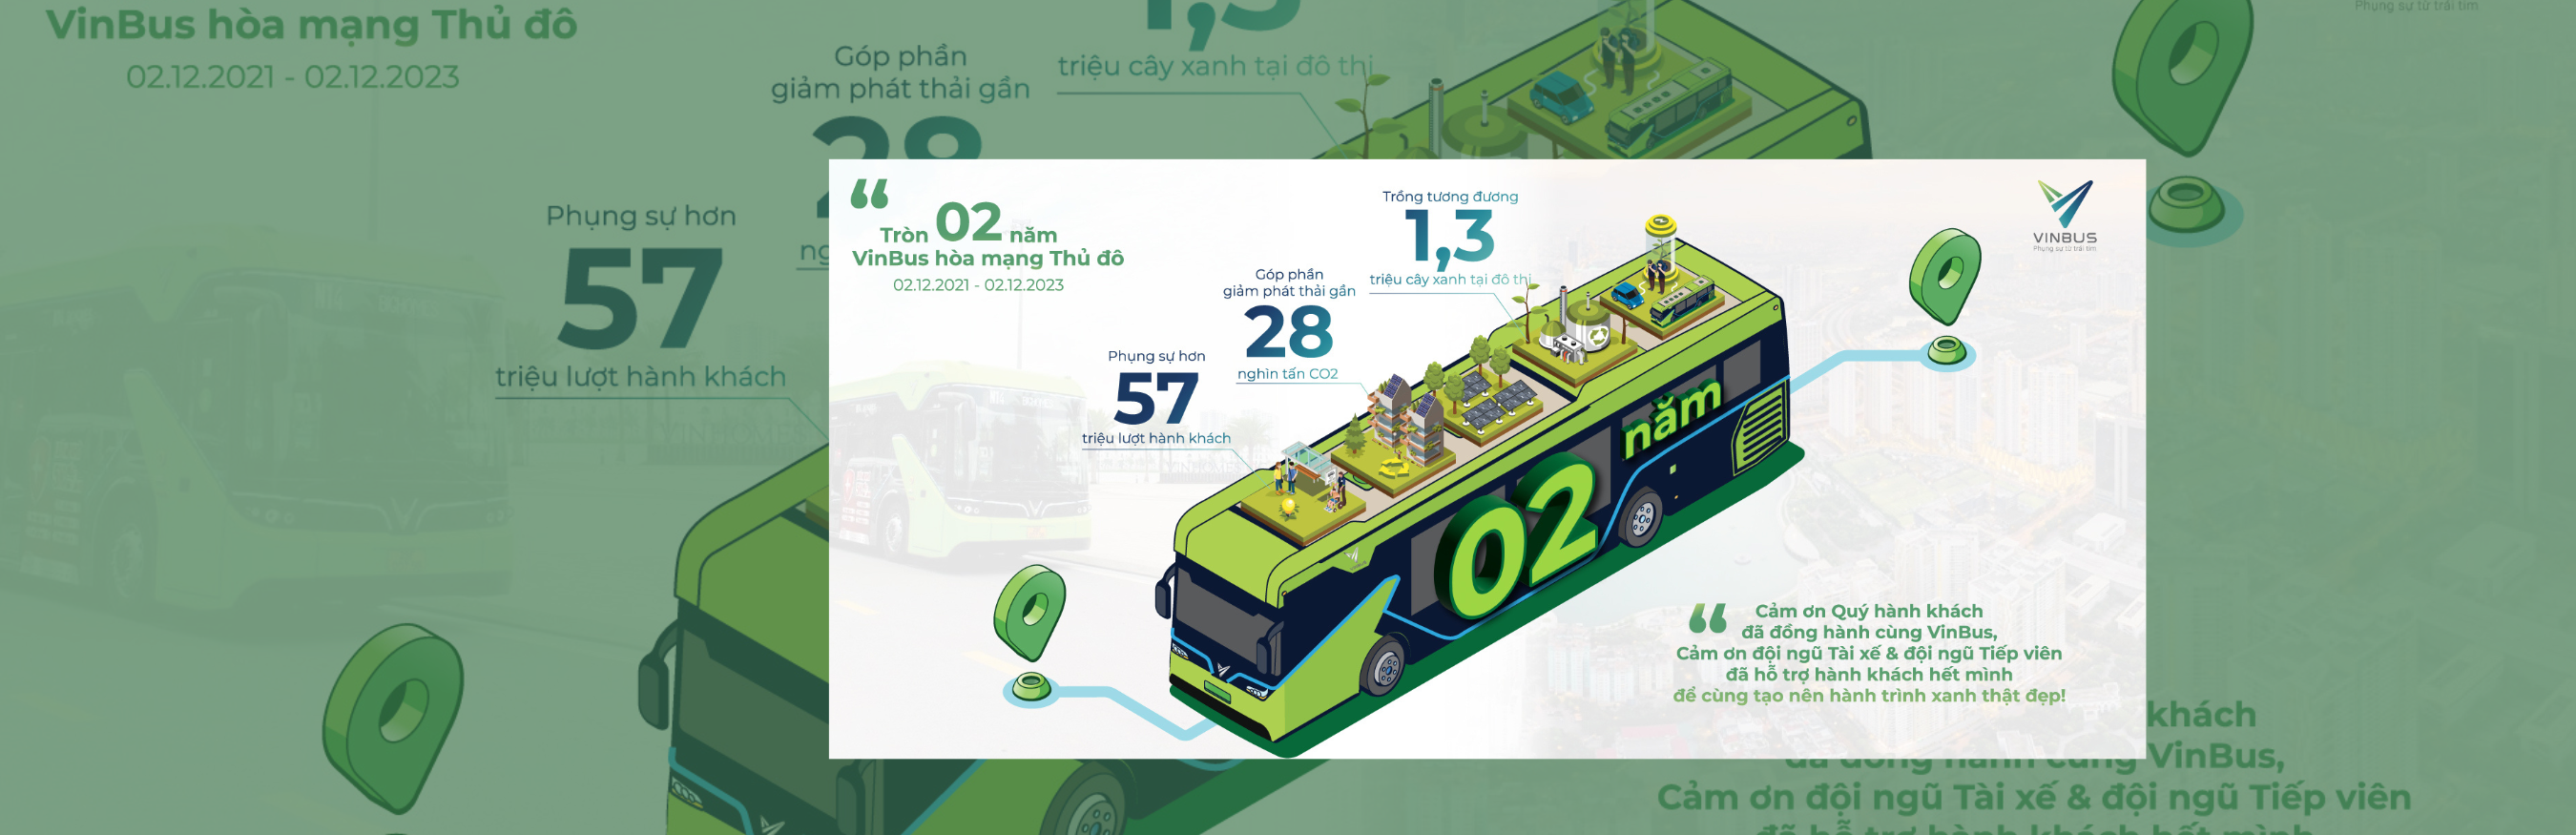 Mừng VinBus tròn 2 năm hòa mạng xe buýt thủ đô 02.12.2021 - 02.12.2023